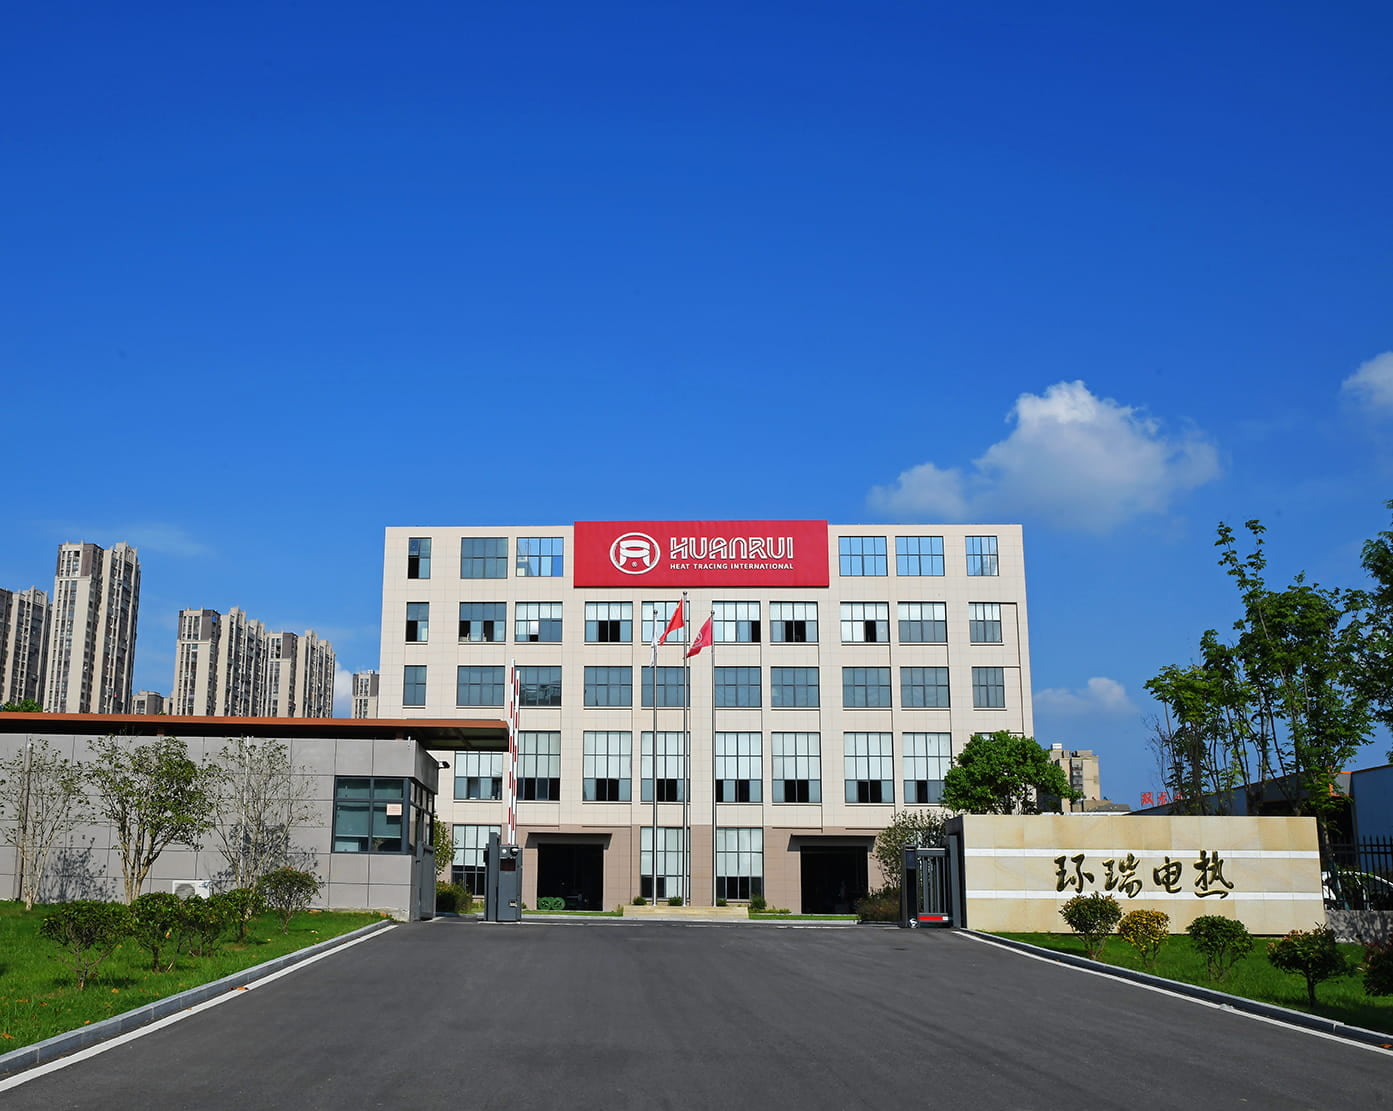 Serdecznie świętuj udaną ofertę Anhui Huanrui dotyczącą projektu zakupu elektrycznej taśmy grzejnej CNPC i akcesoriów
